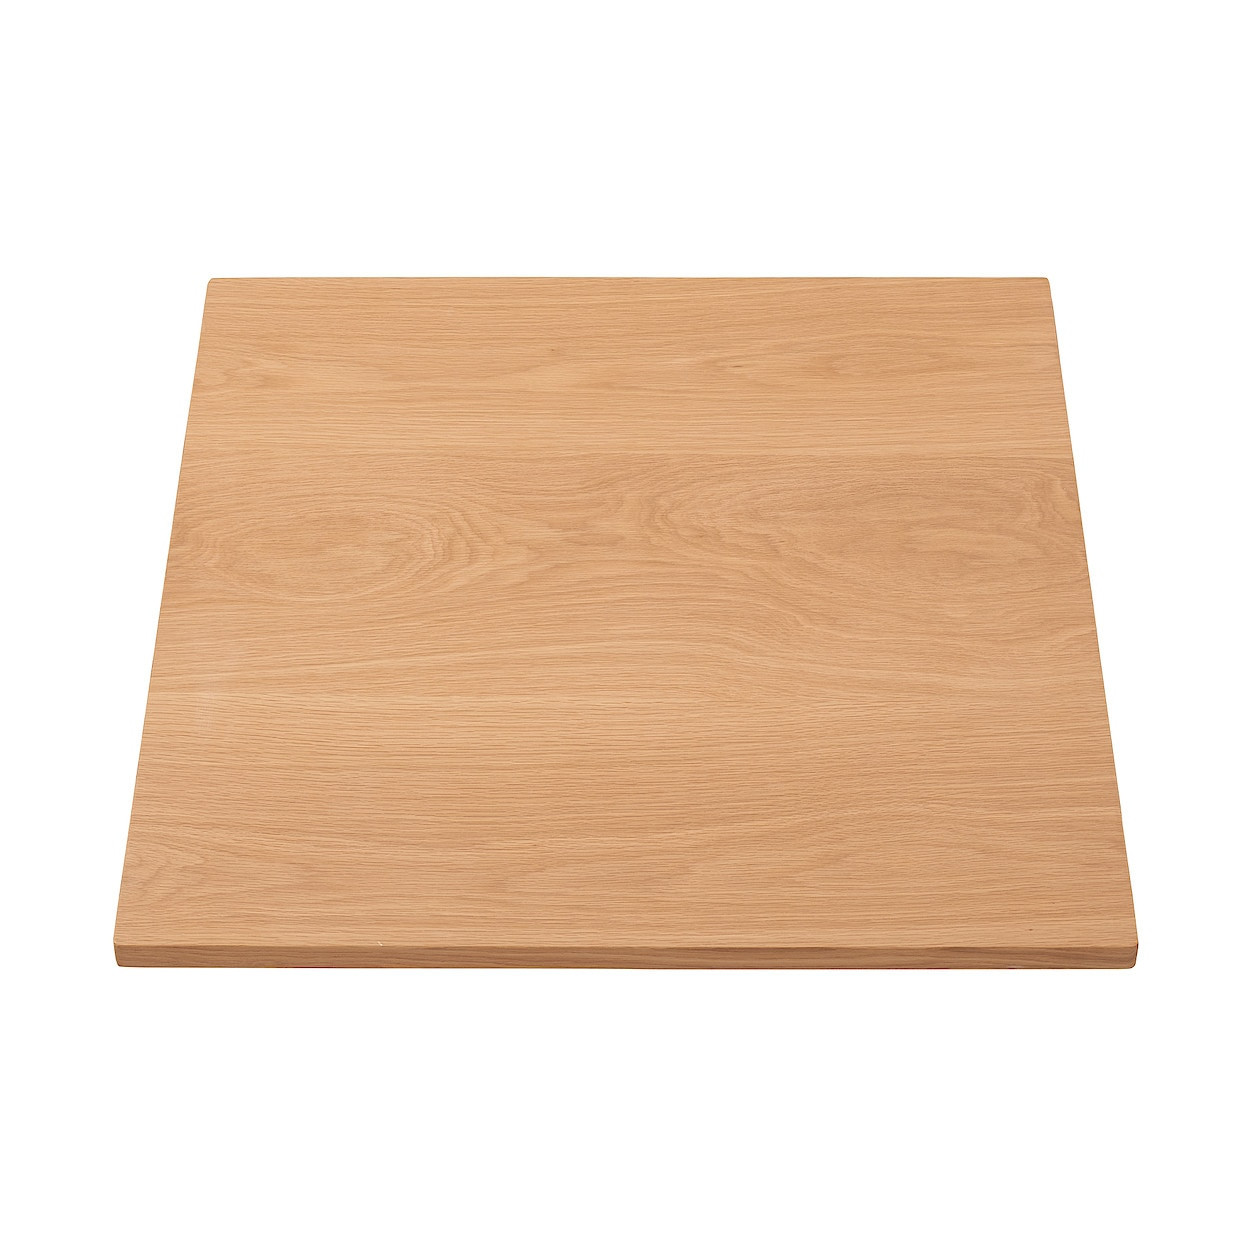 Stół systemowy - blat lity dąb 80x80cm